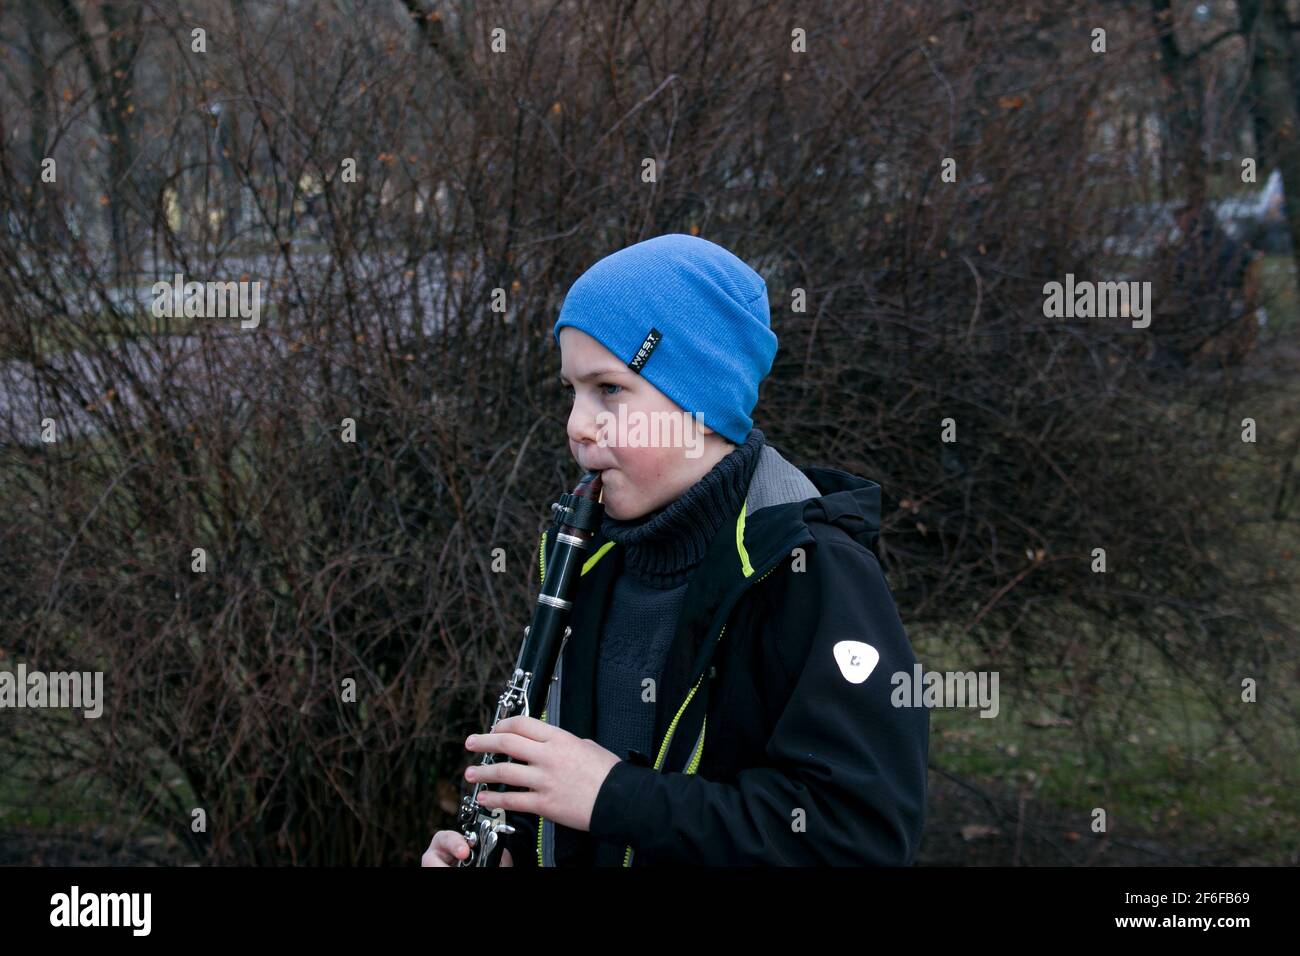 Dnepropetrovsk, Ukraine - 03.29.2021: Un garçon dans le parc joue la clarinette. L'enfant est de bonne humeur. Banque D'Images